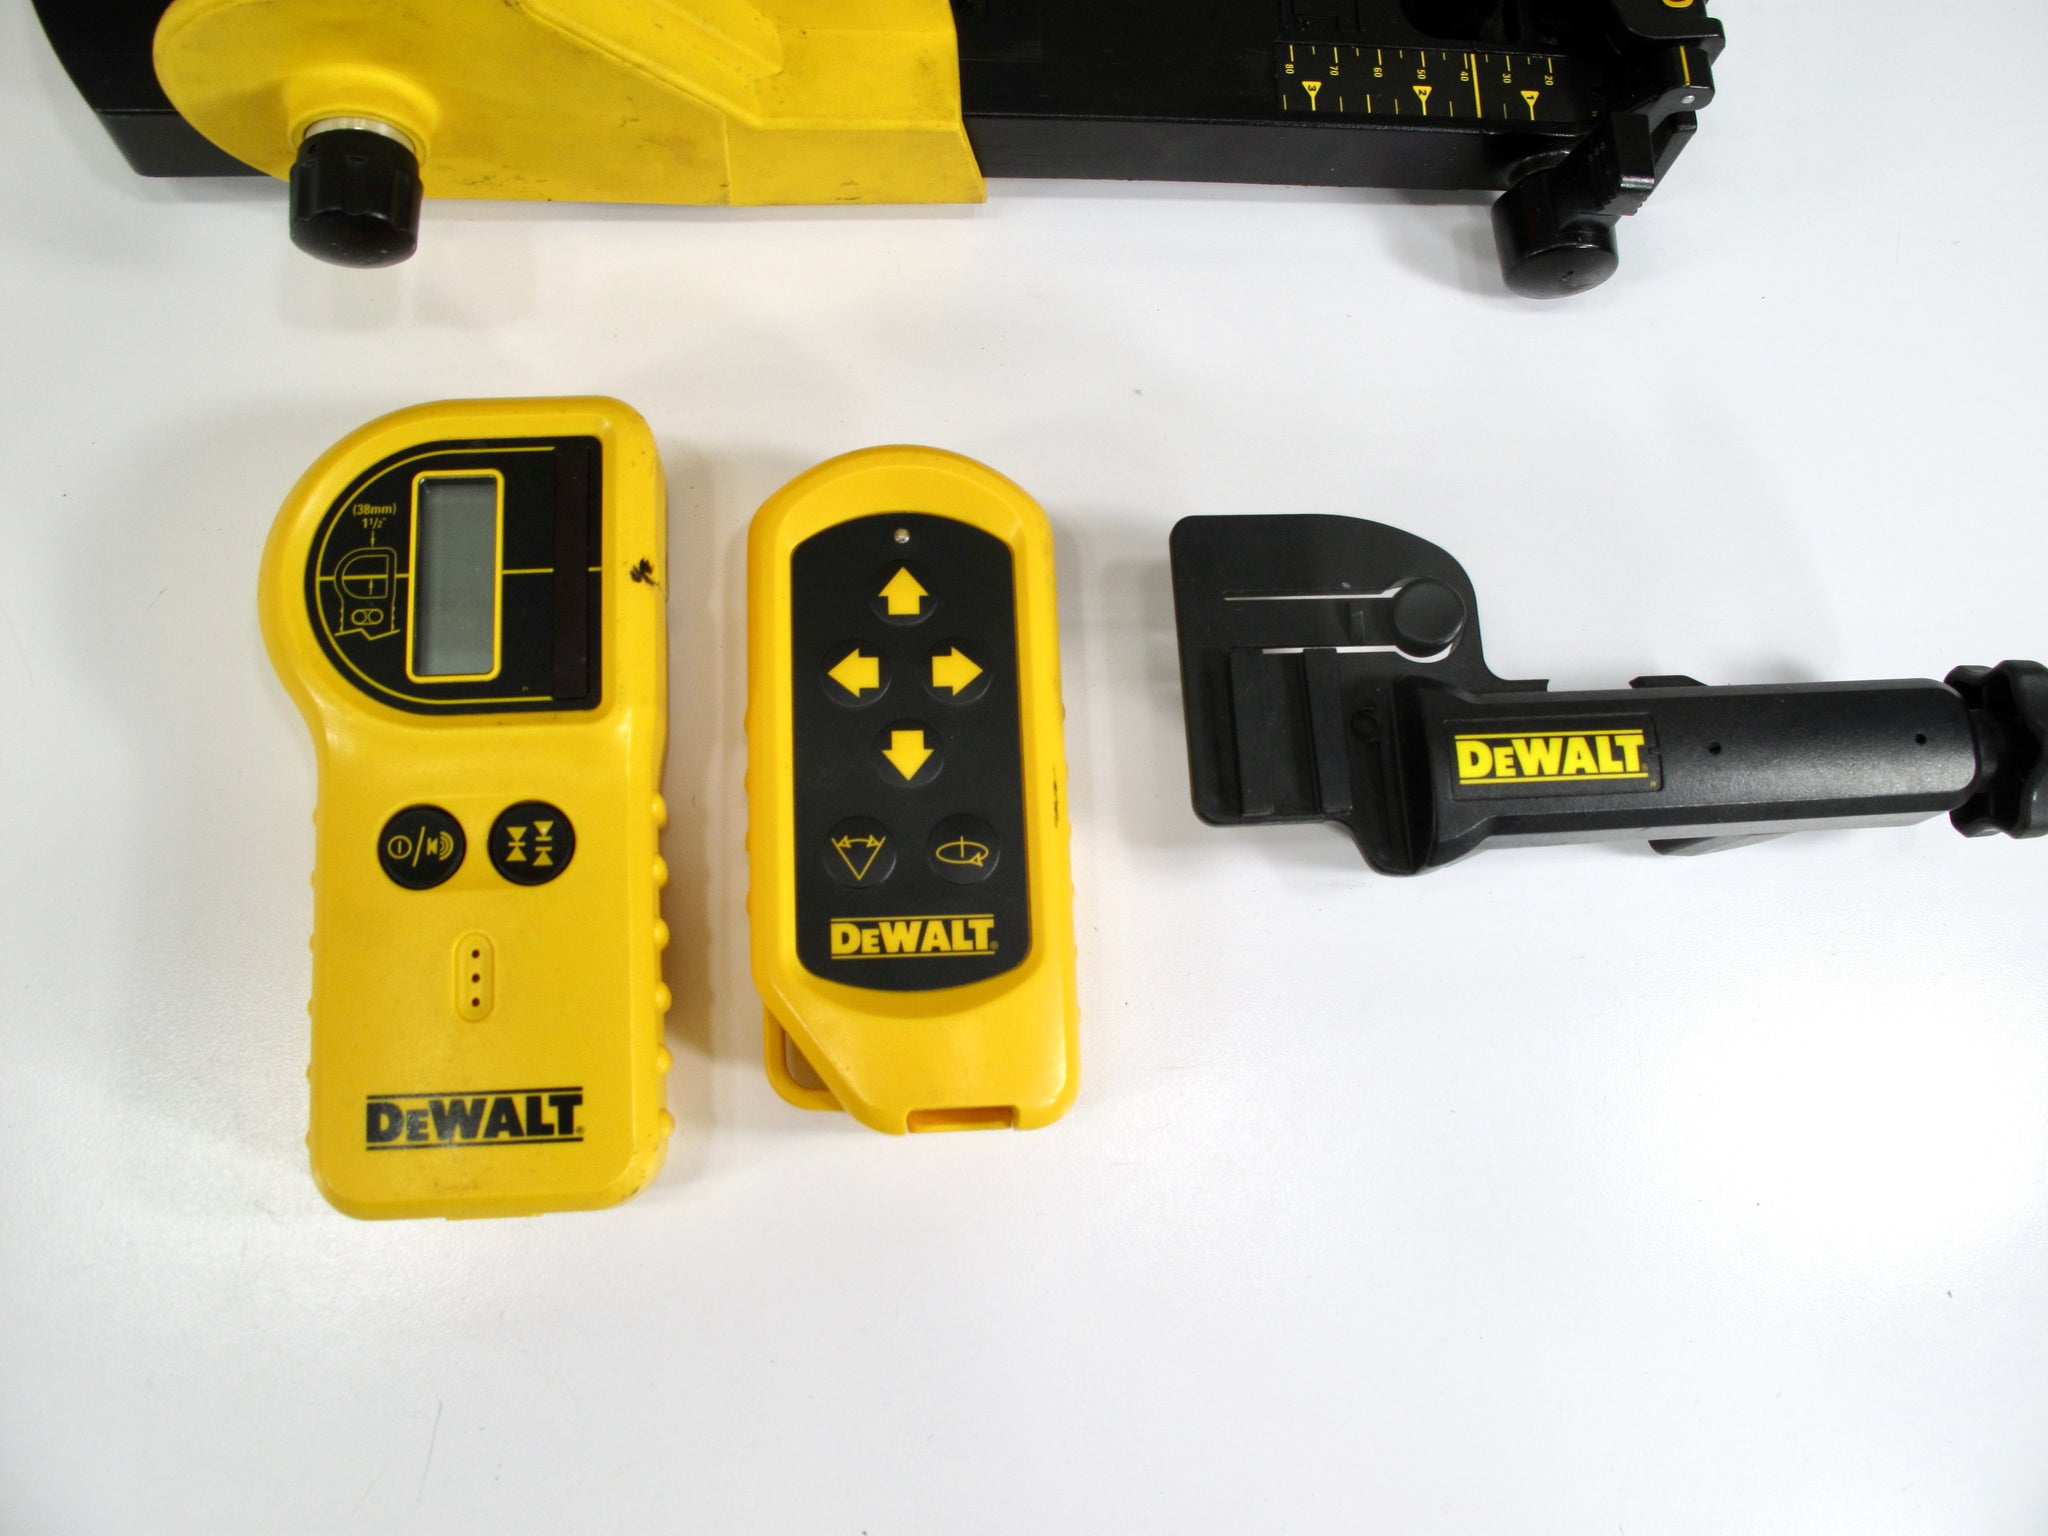 Dewalt Self Leveling Laser Construction Level Remote